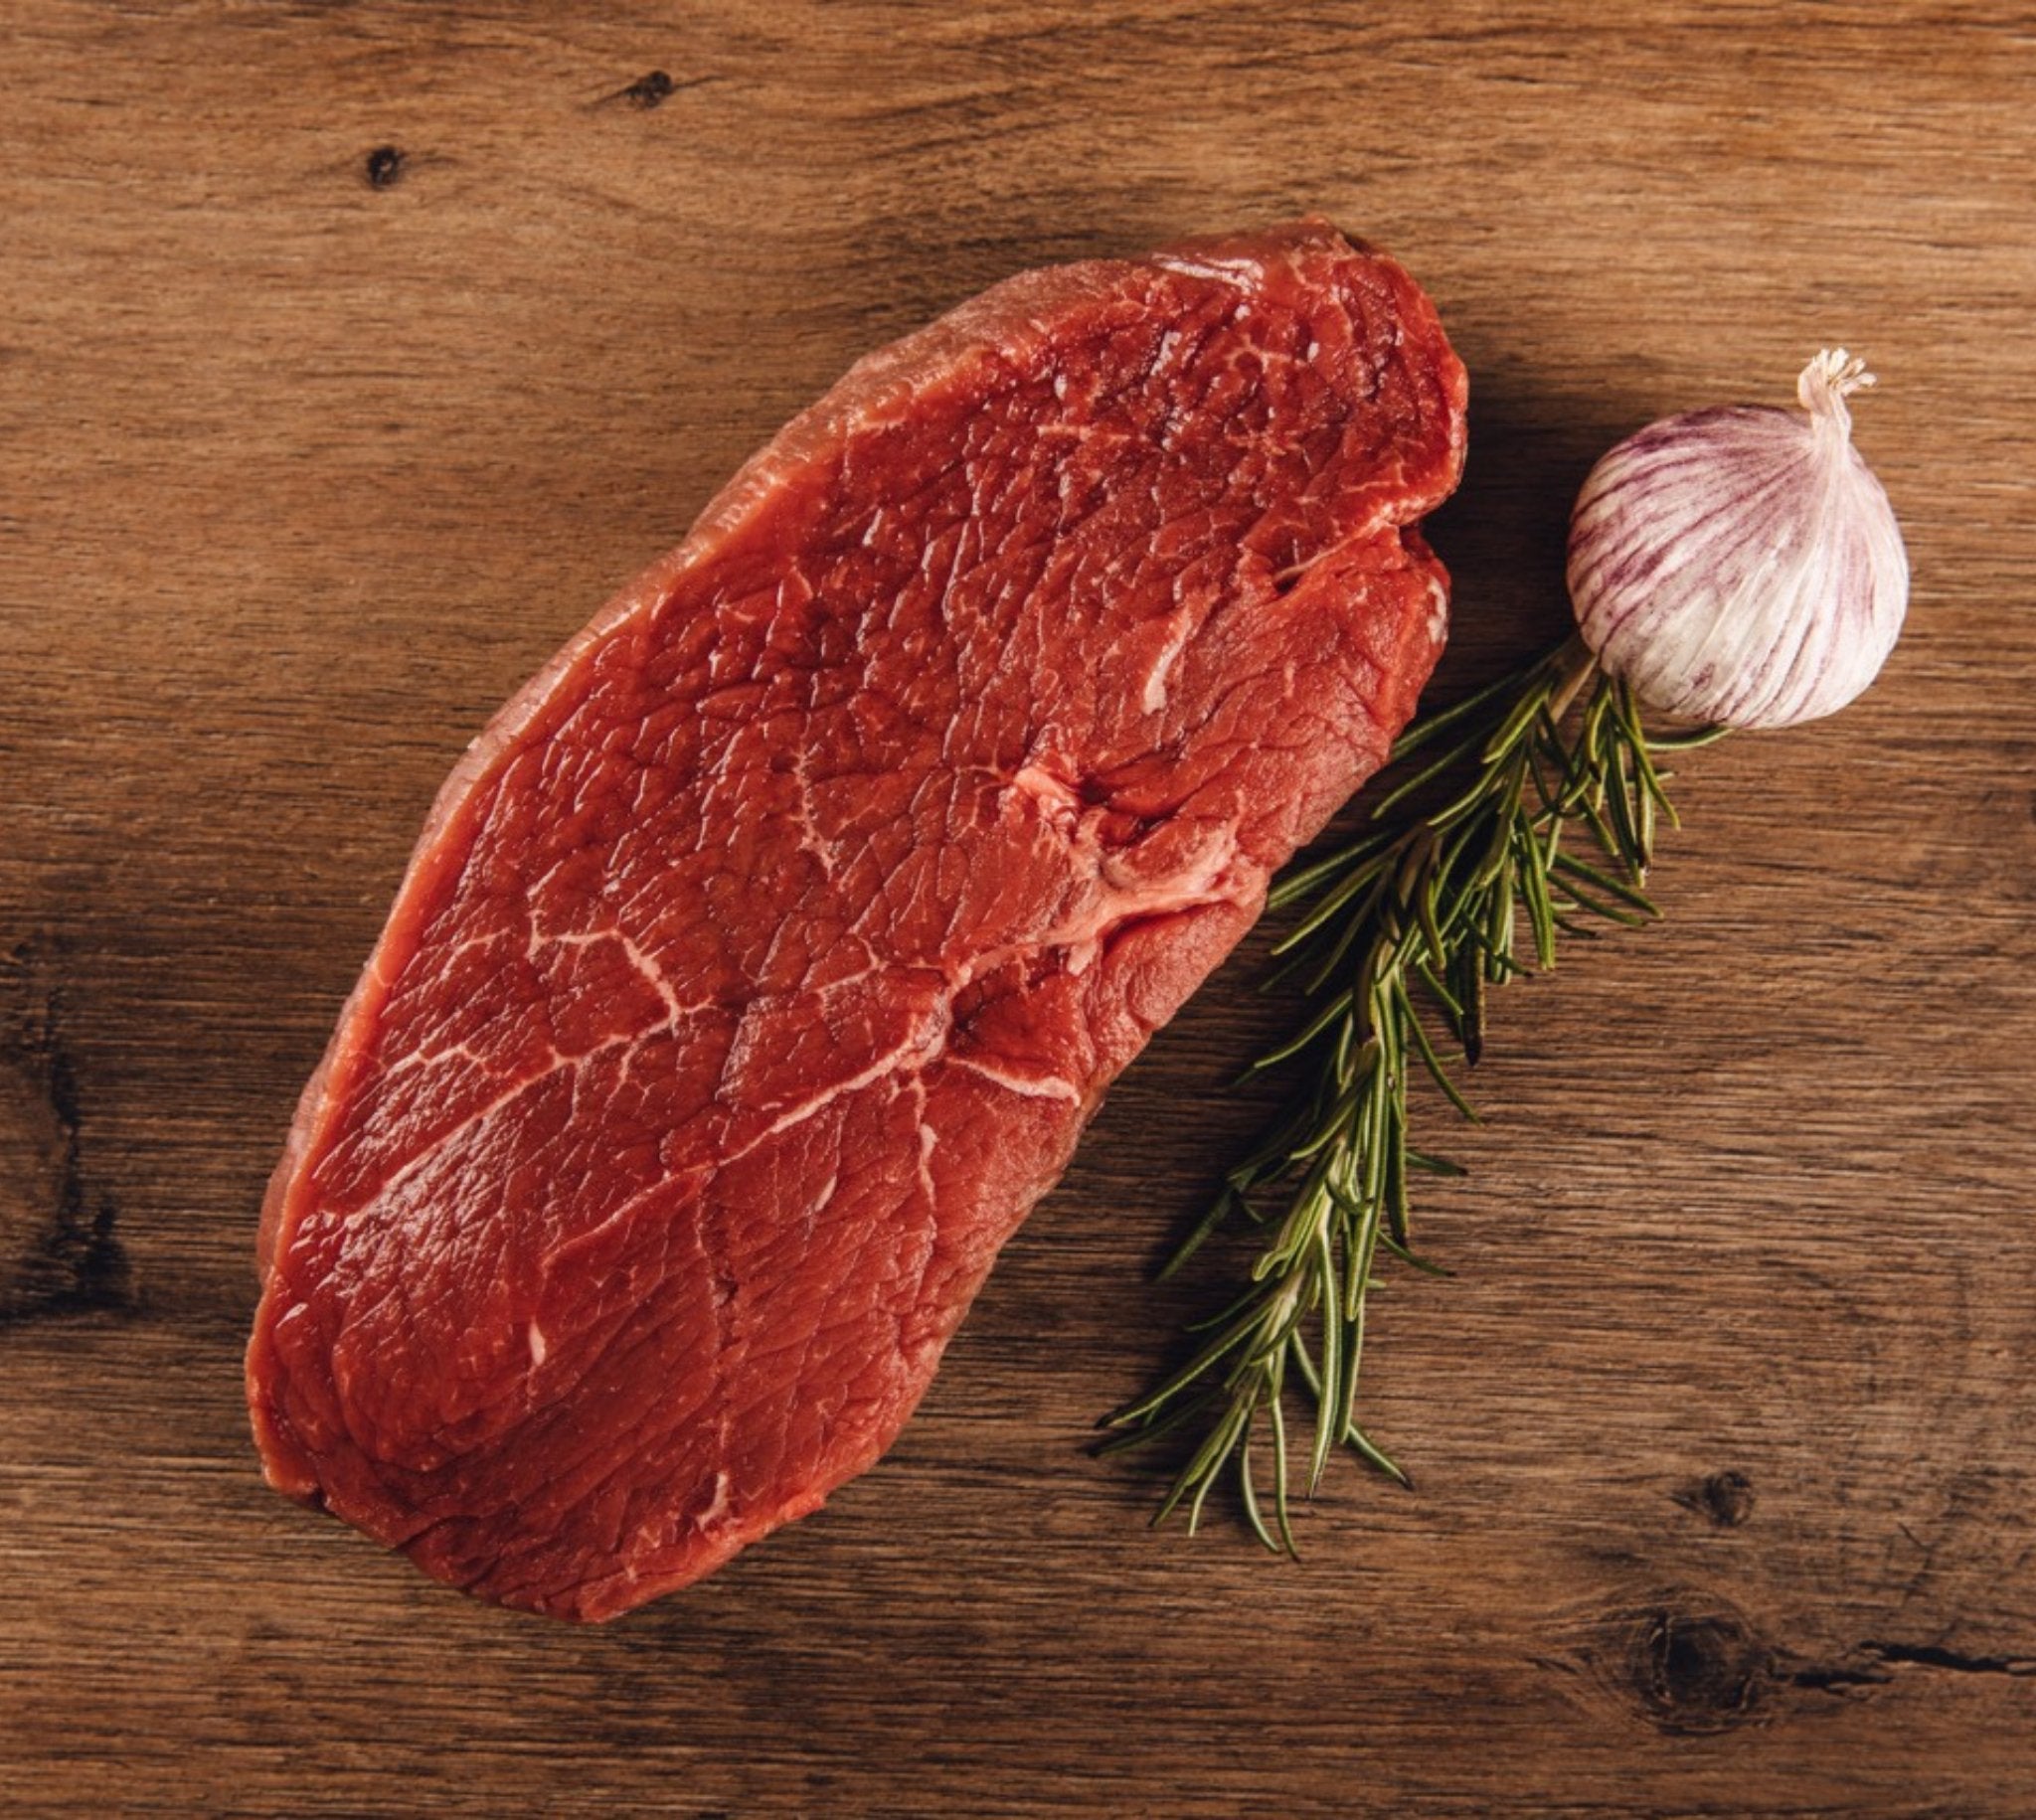 Steakhüfte Bodensee Färse - Premium Fleisch bei BüffelBill Genießen Sie die besonders beliebte Steakhüfte von Bodensee Färse bei BüffelBill. Magere Fleischstücke mit feiner Textur und intensivem Geschmack für unvergessliche Gerichte.